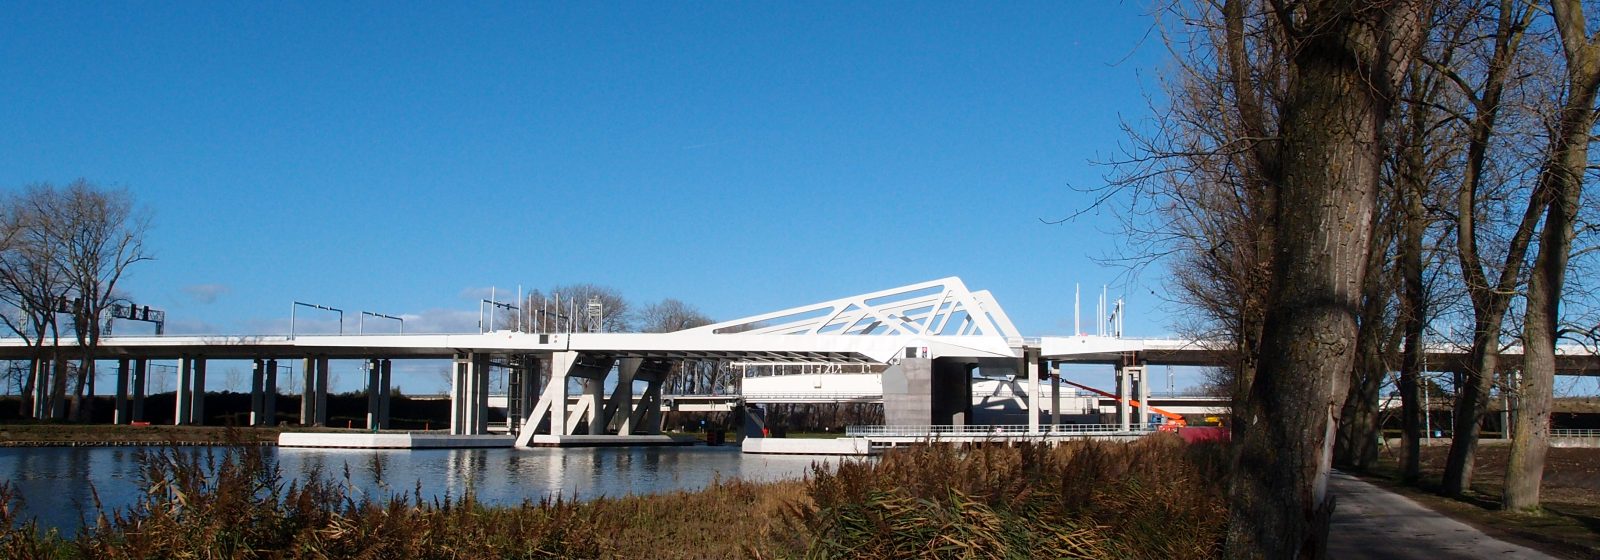 Boudewijnkanaal Brugge-Zeebrugge, nieuwe Herdersbrug A11